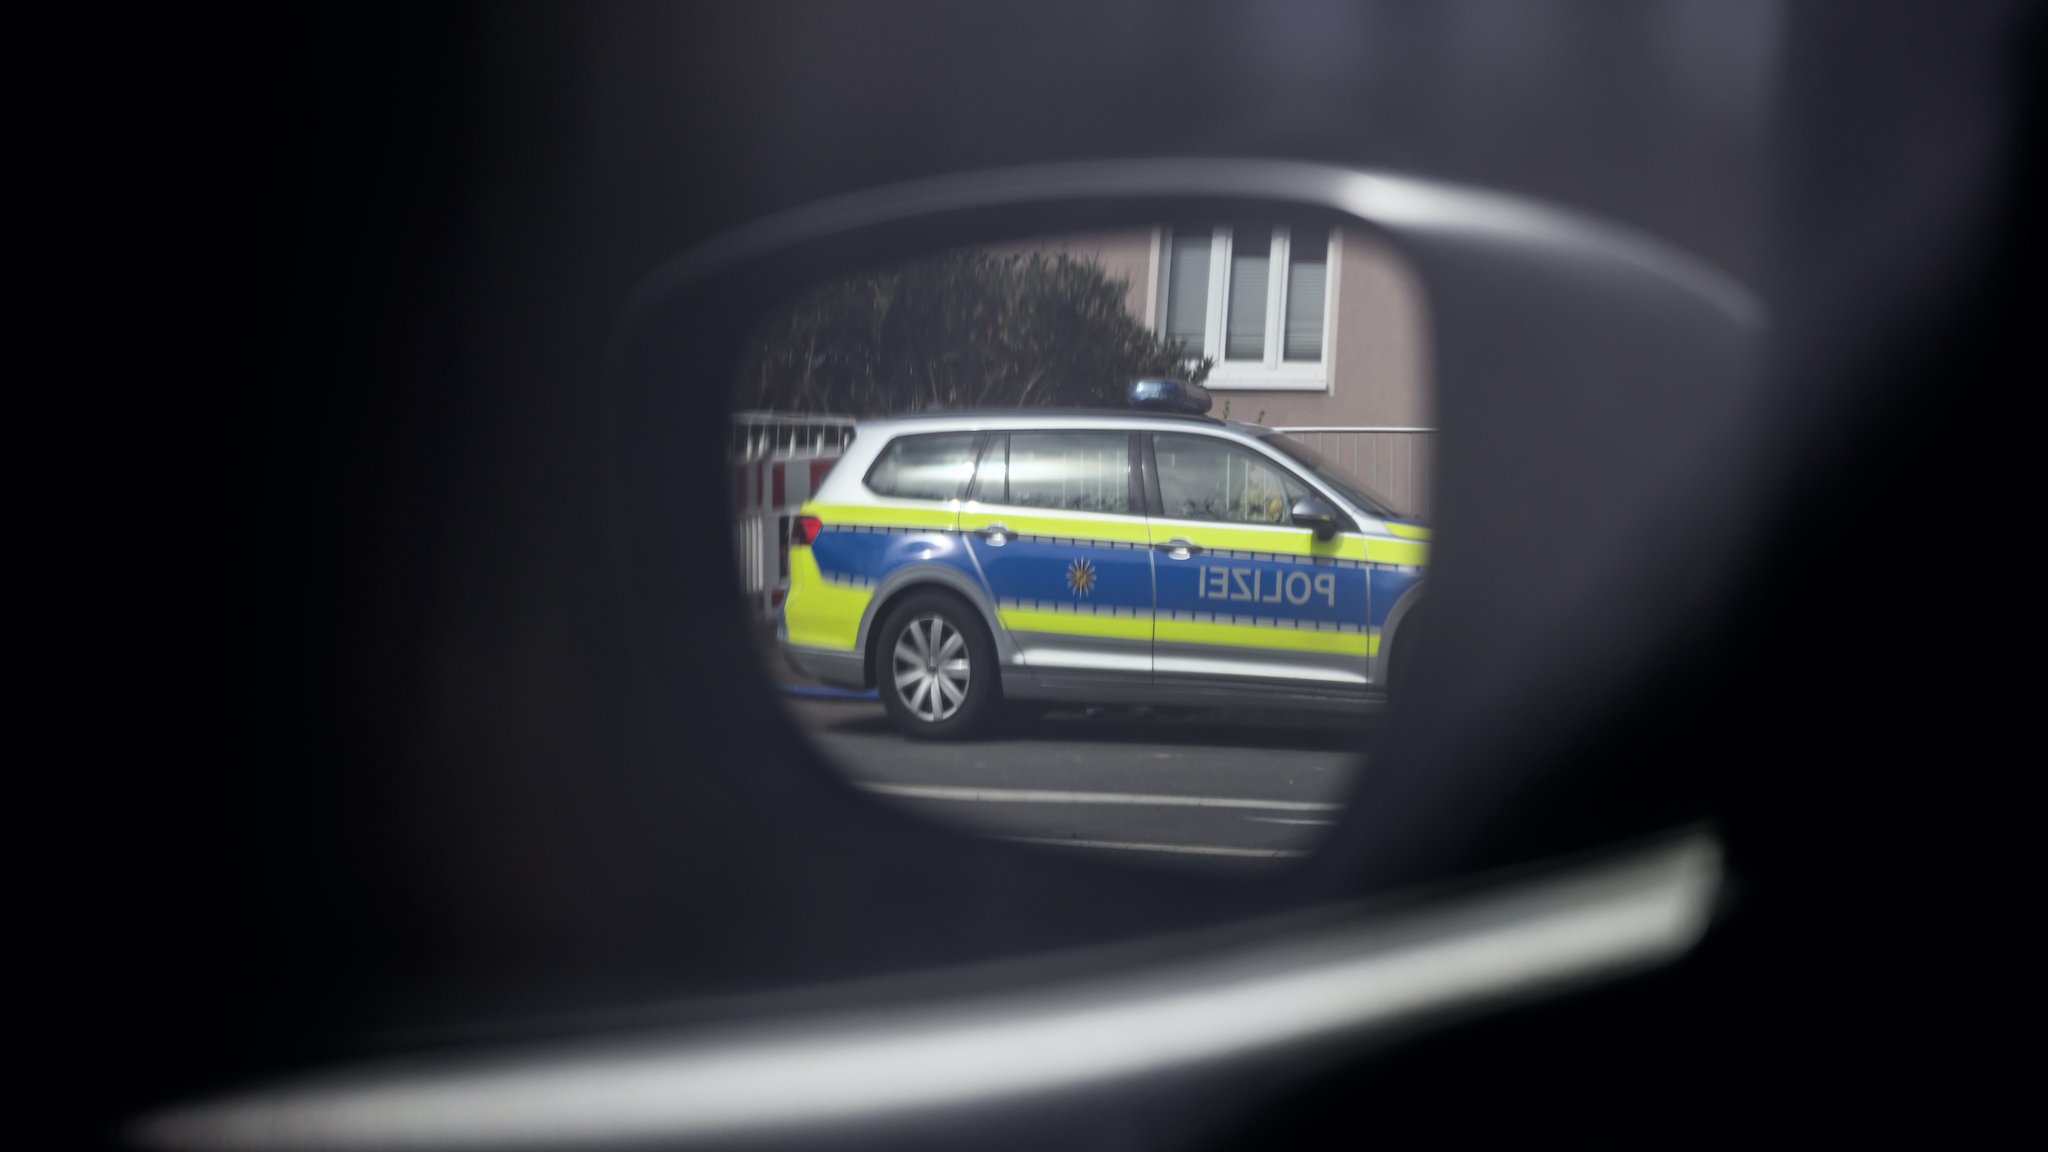 LKA / Polizei Sachsen